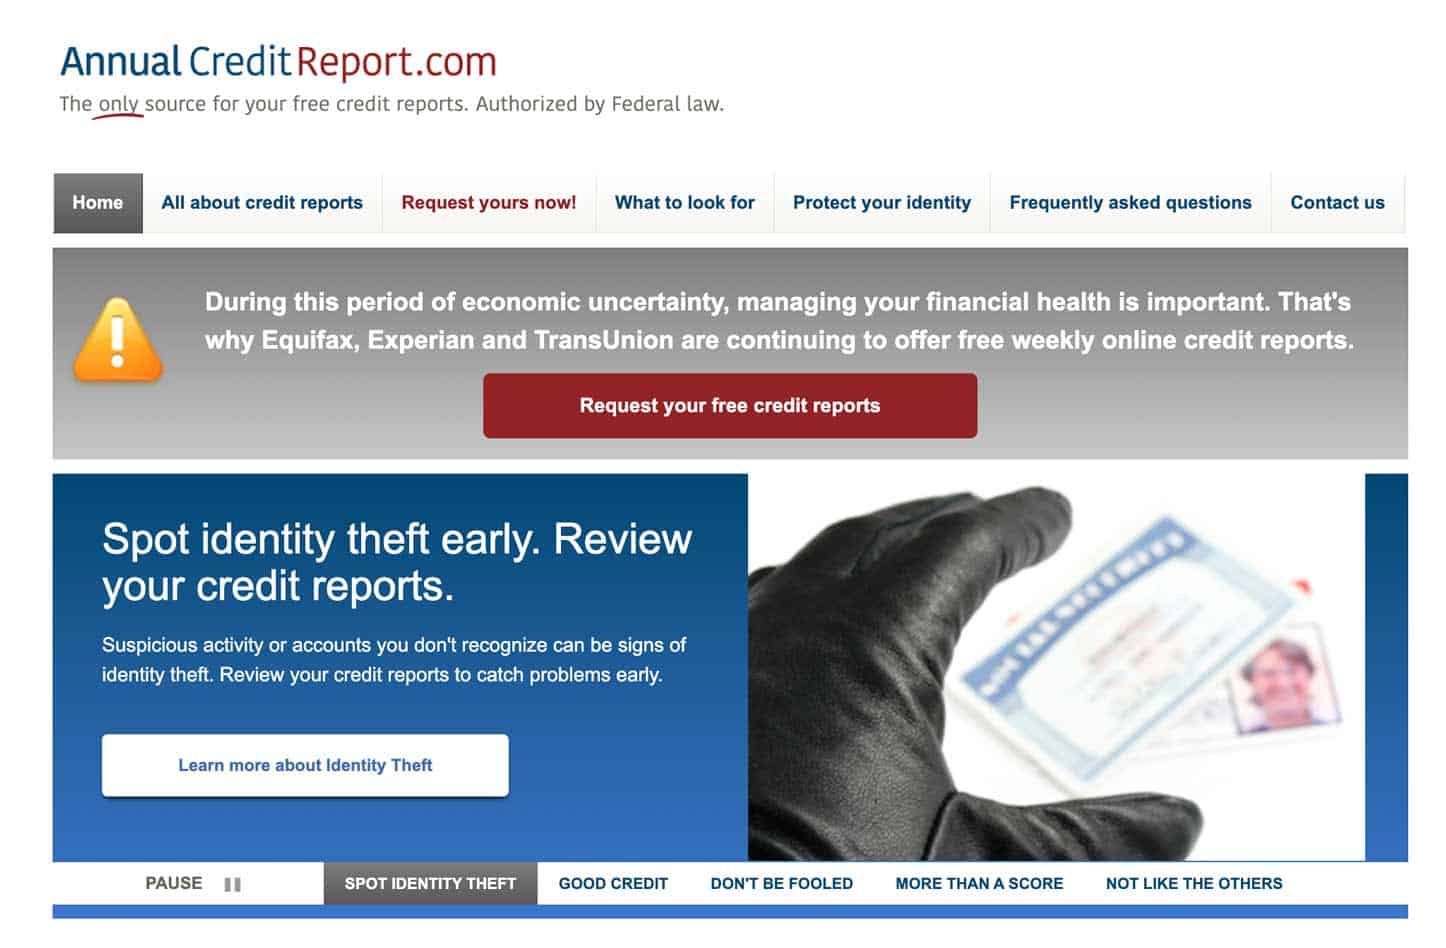 Screenshot from AnnualCreditReport.com